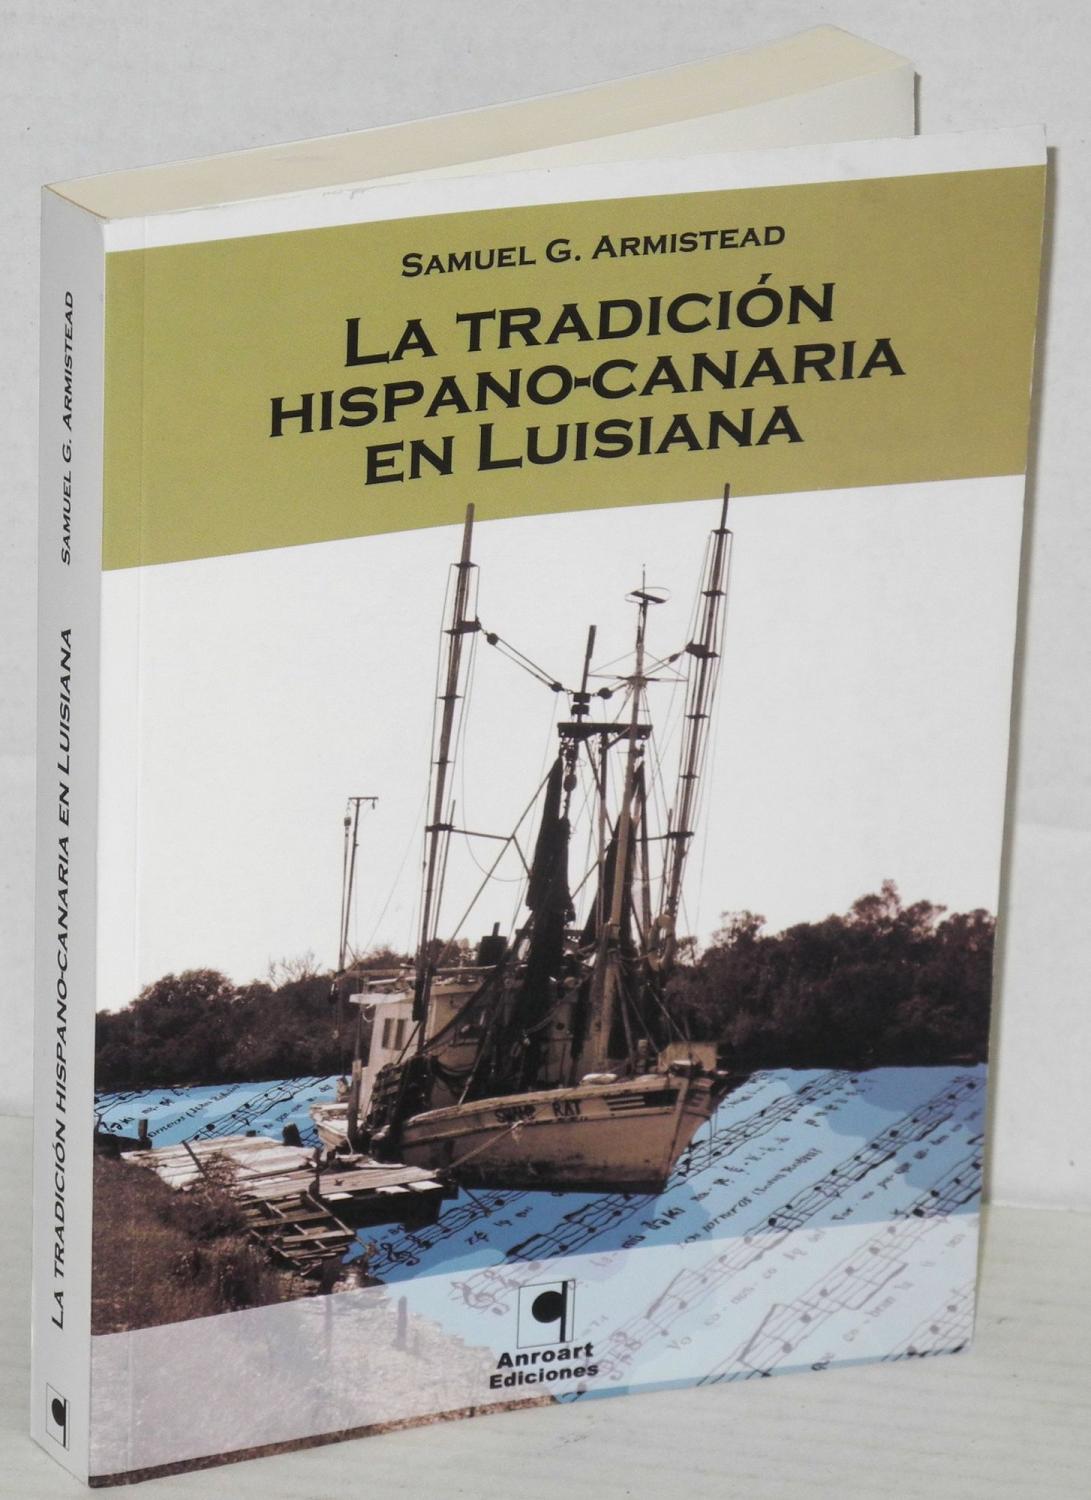 La Tradicion Hispano-Canaria En Luisiana / The Hispanic-Canary Tradition In Luisiana: La Literatura Tradicioanl De Los Islenos / Traditional Literature of the Islanders